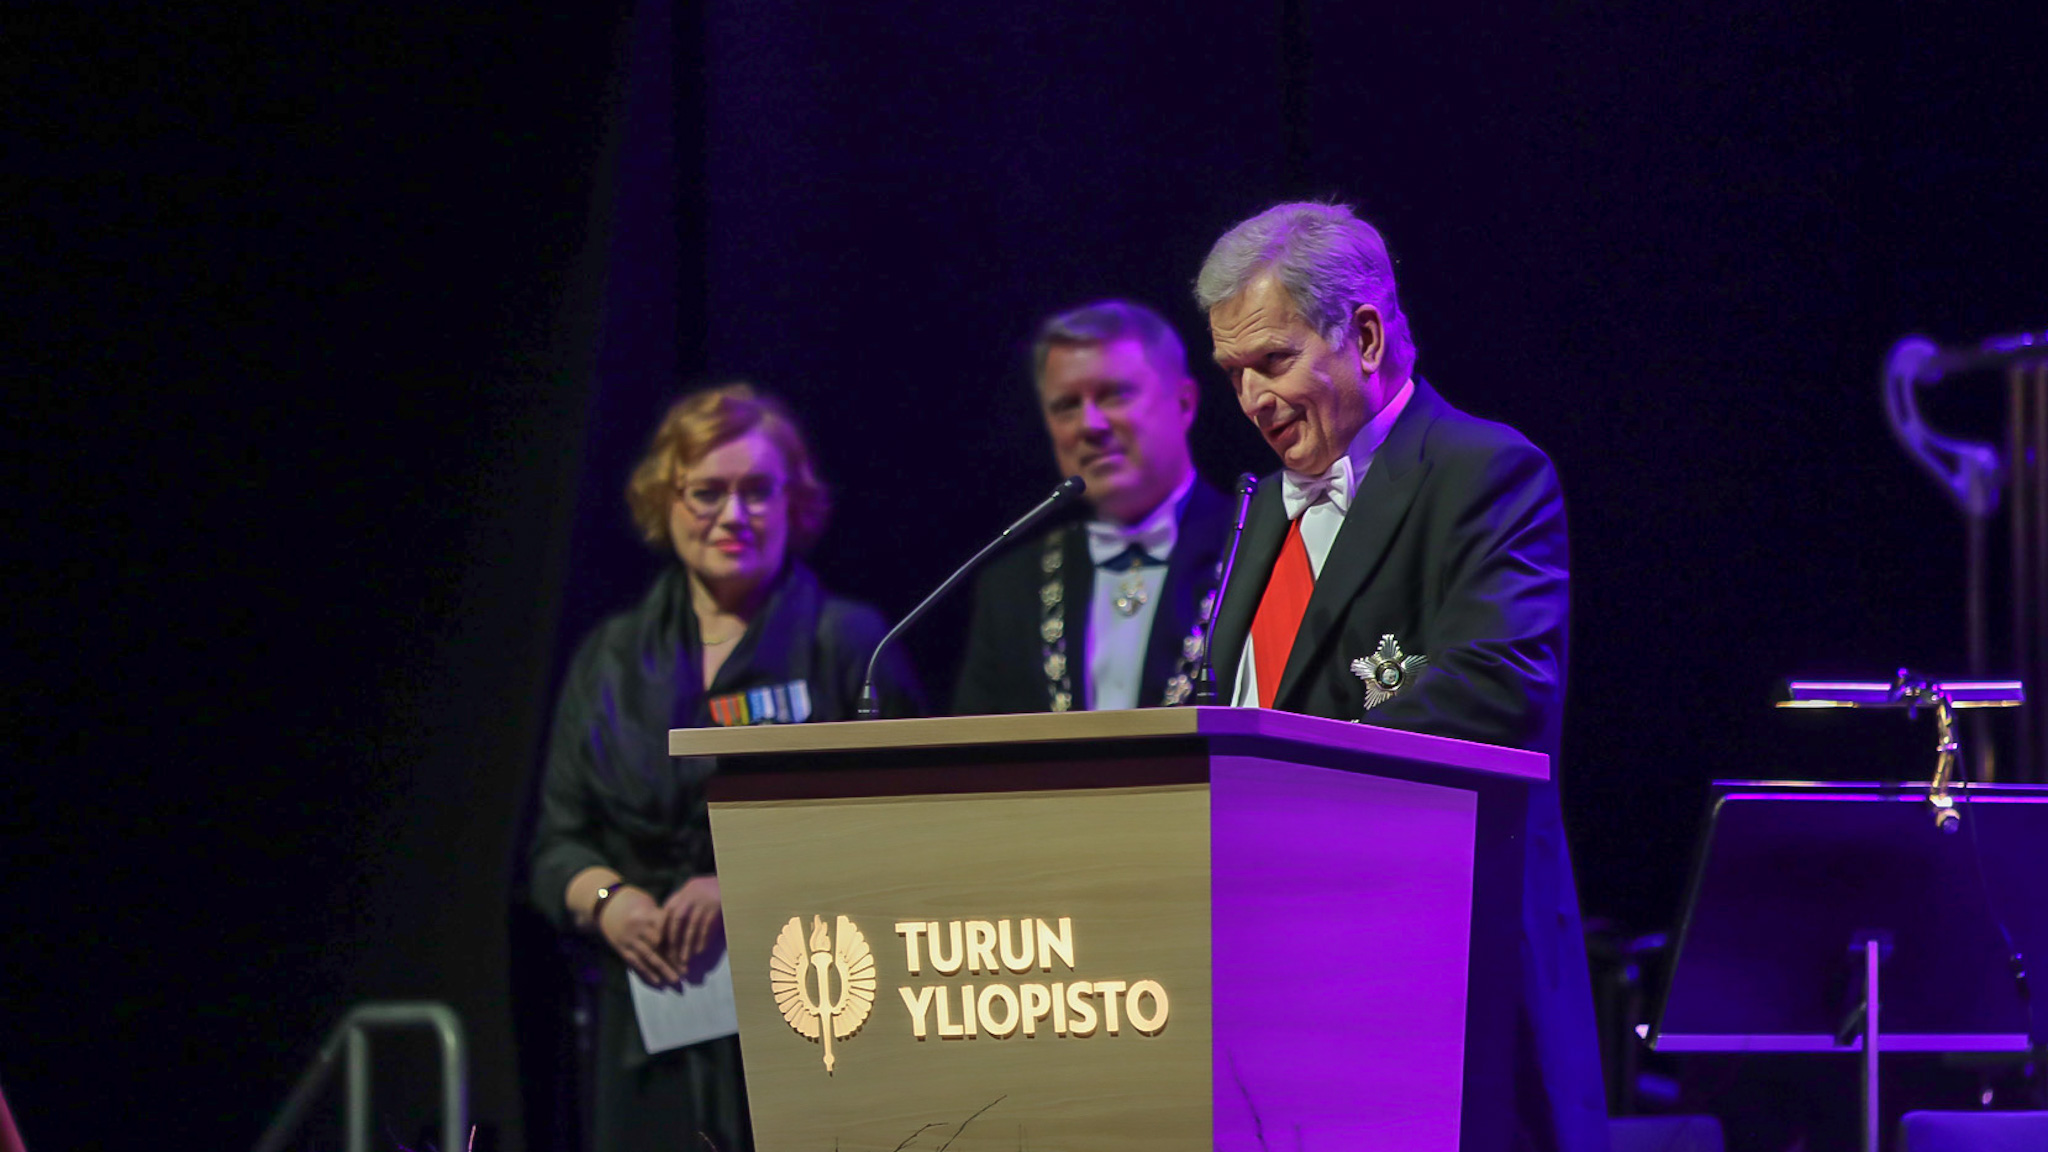 Tasavallan presidentti Sauli Niinistö vastaanotti vuoden alumnin tunnustuksen